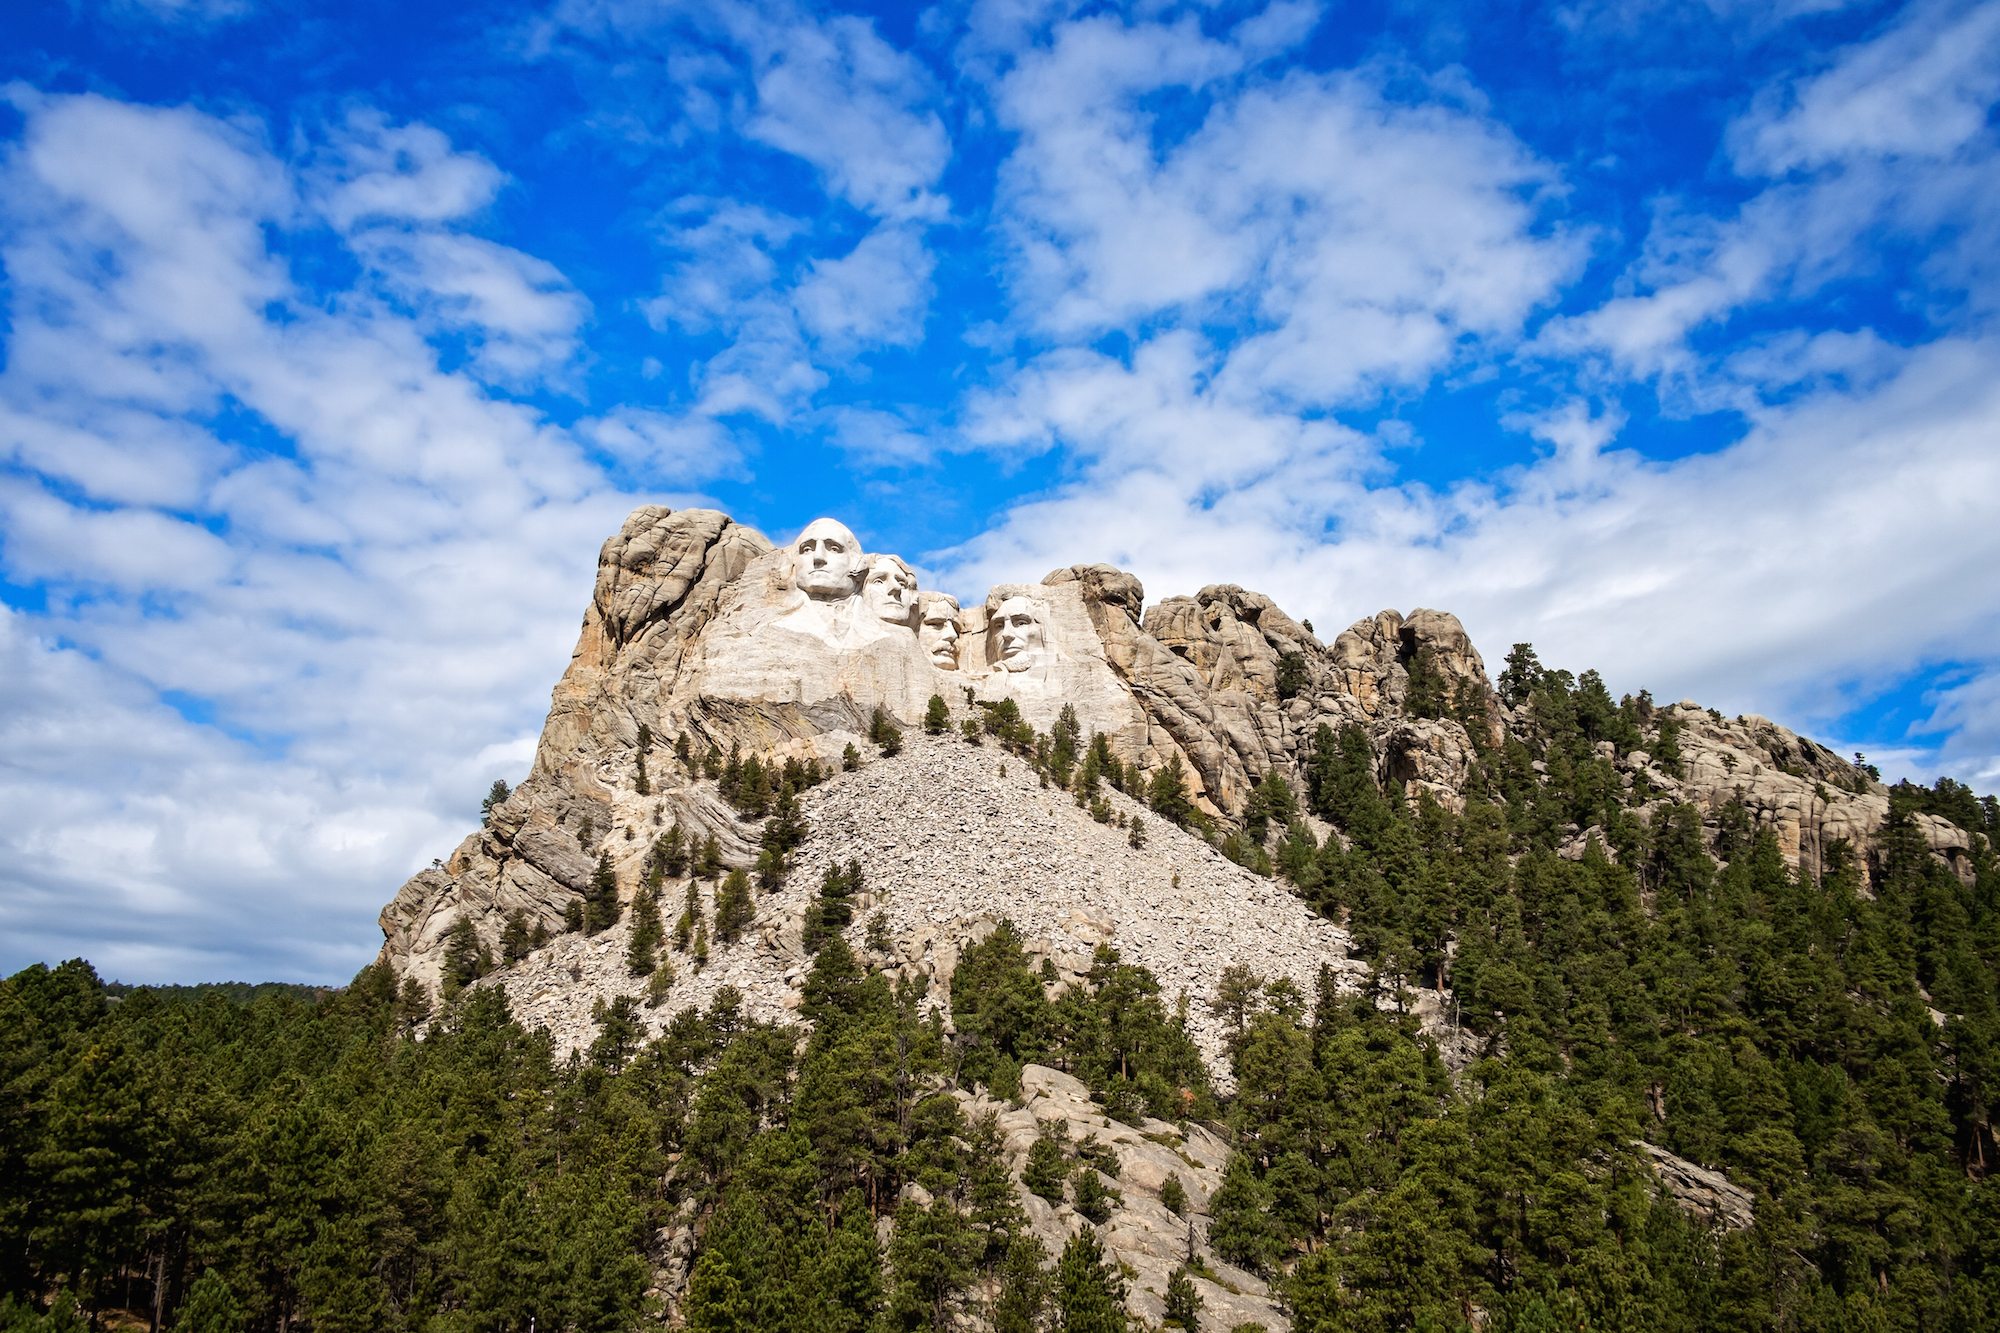 Visit Mount Rushmore